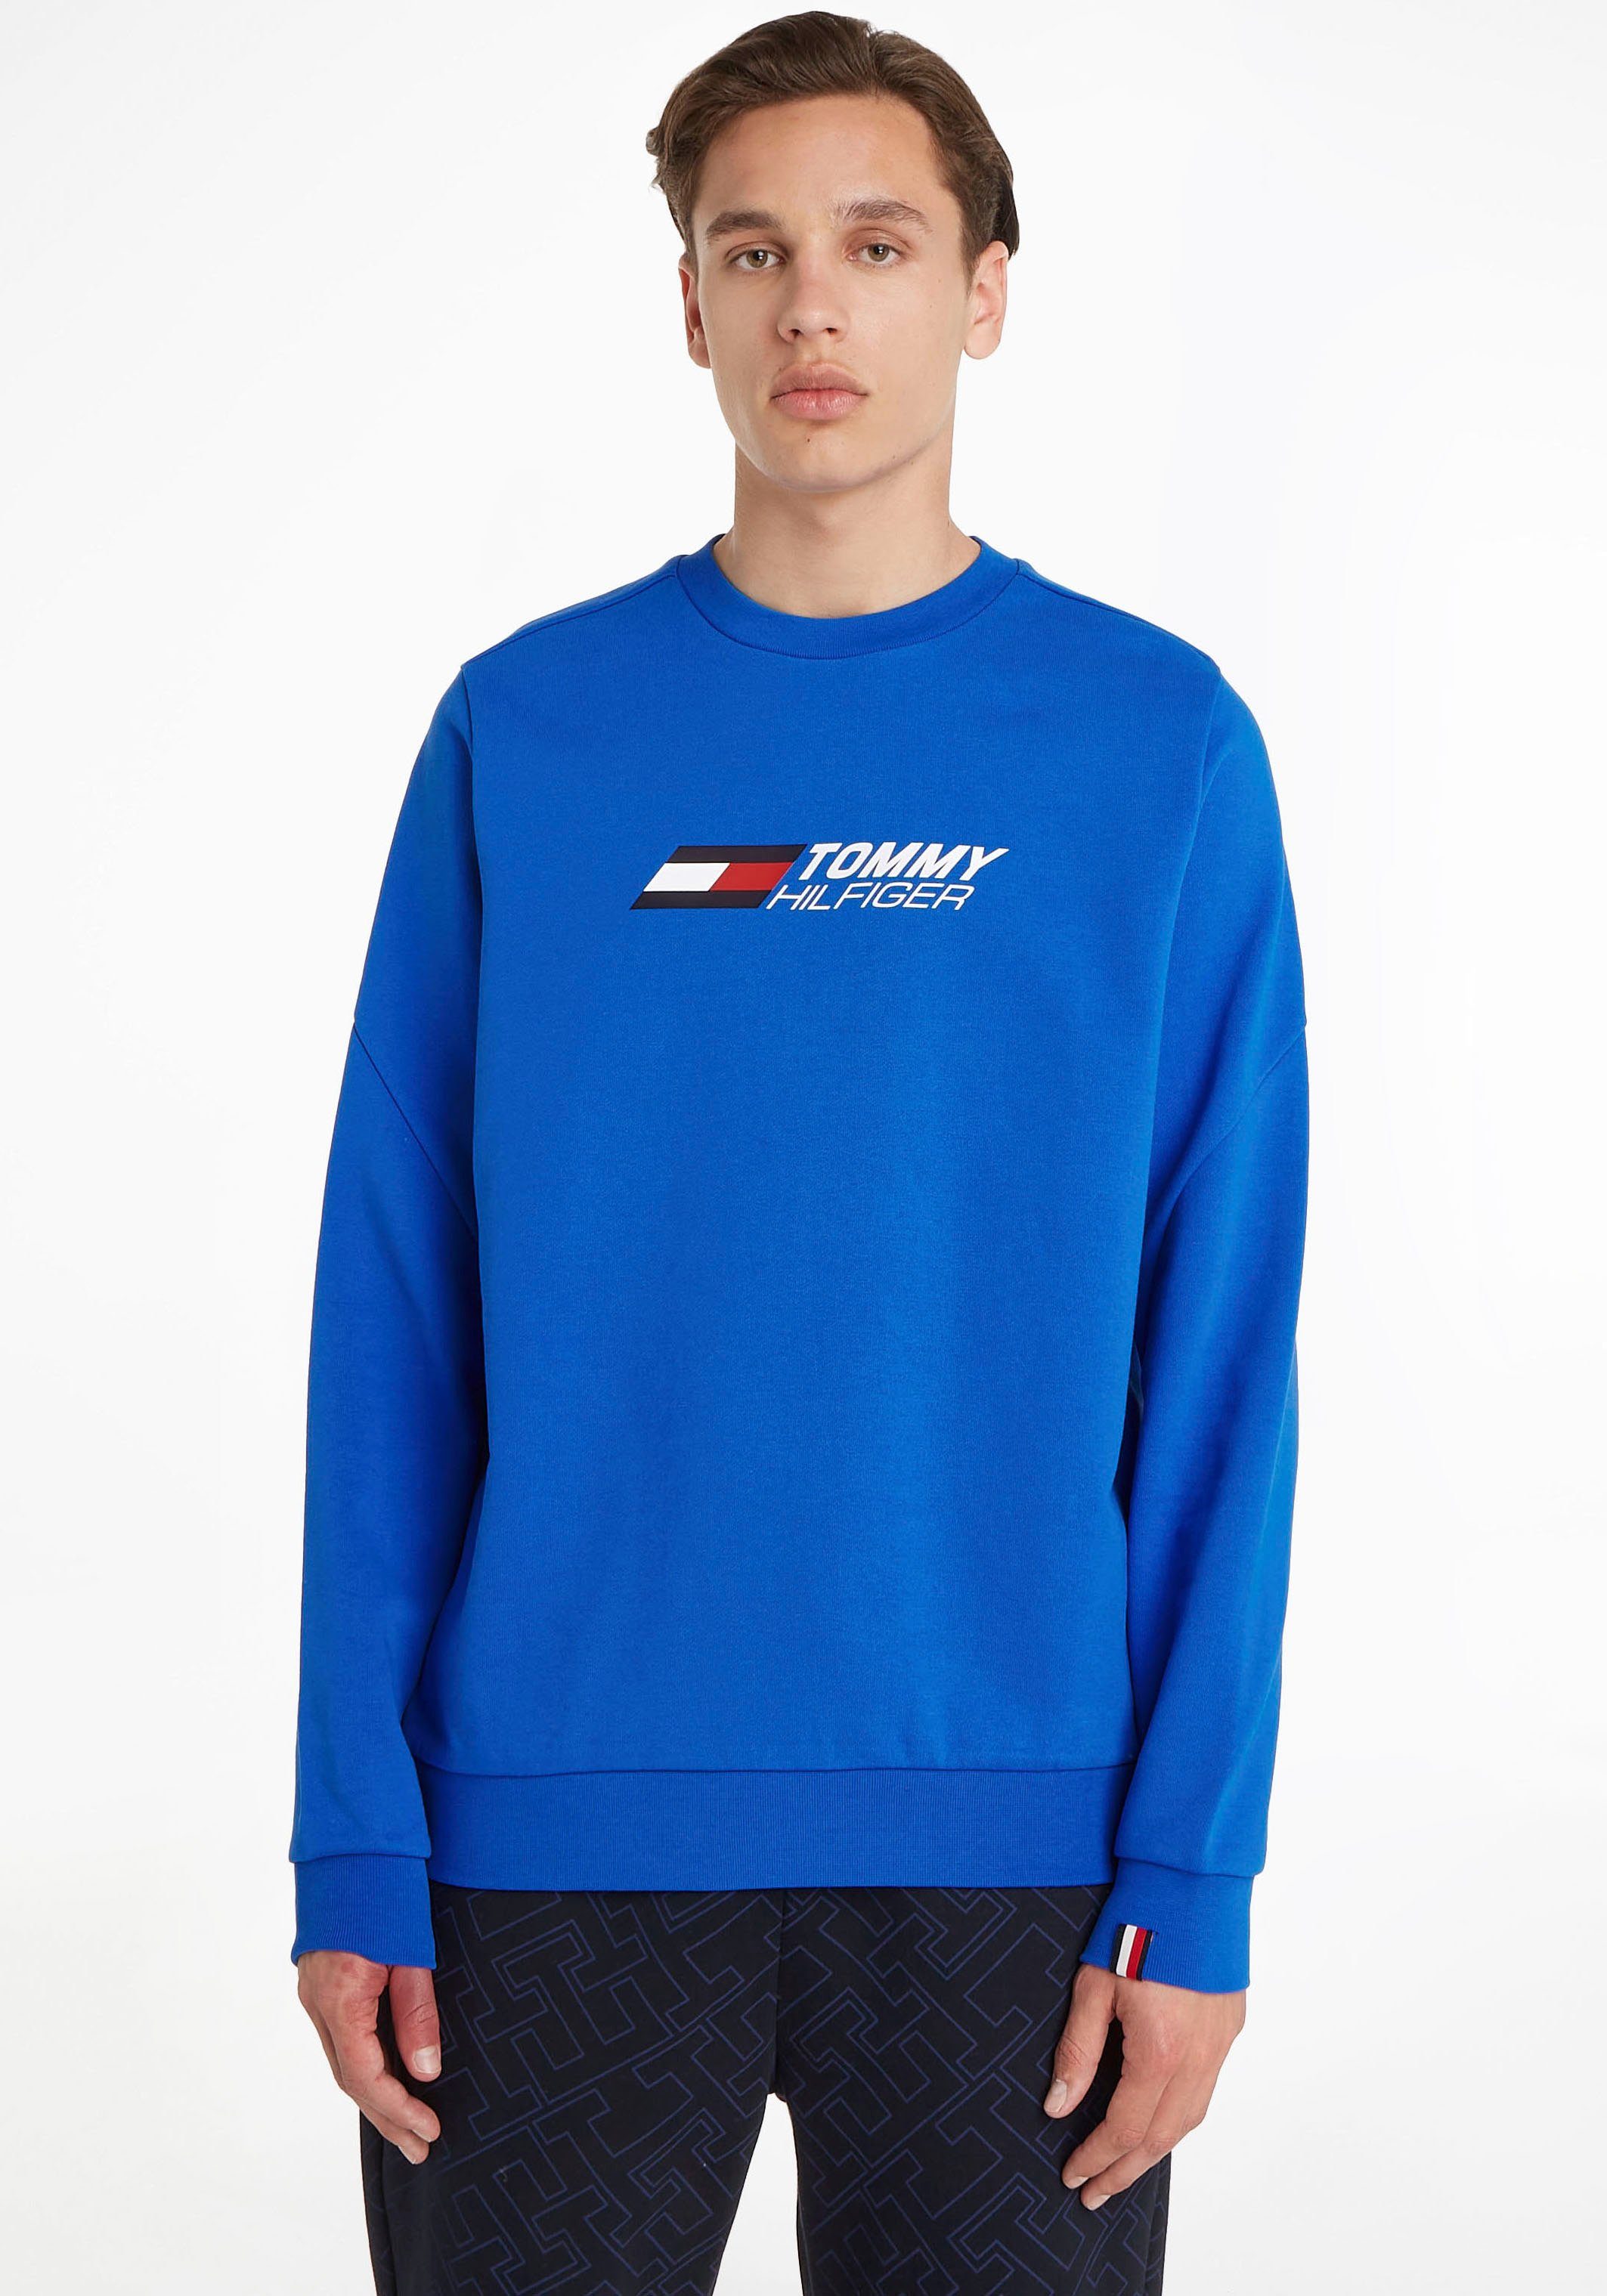 CREW Sport ESSENTIALS blau Hilfiger Tommy Sweater